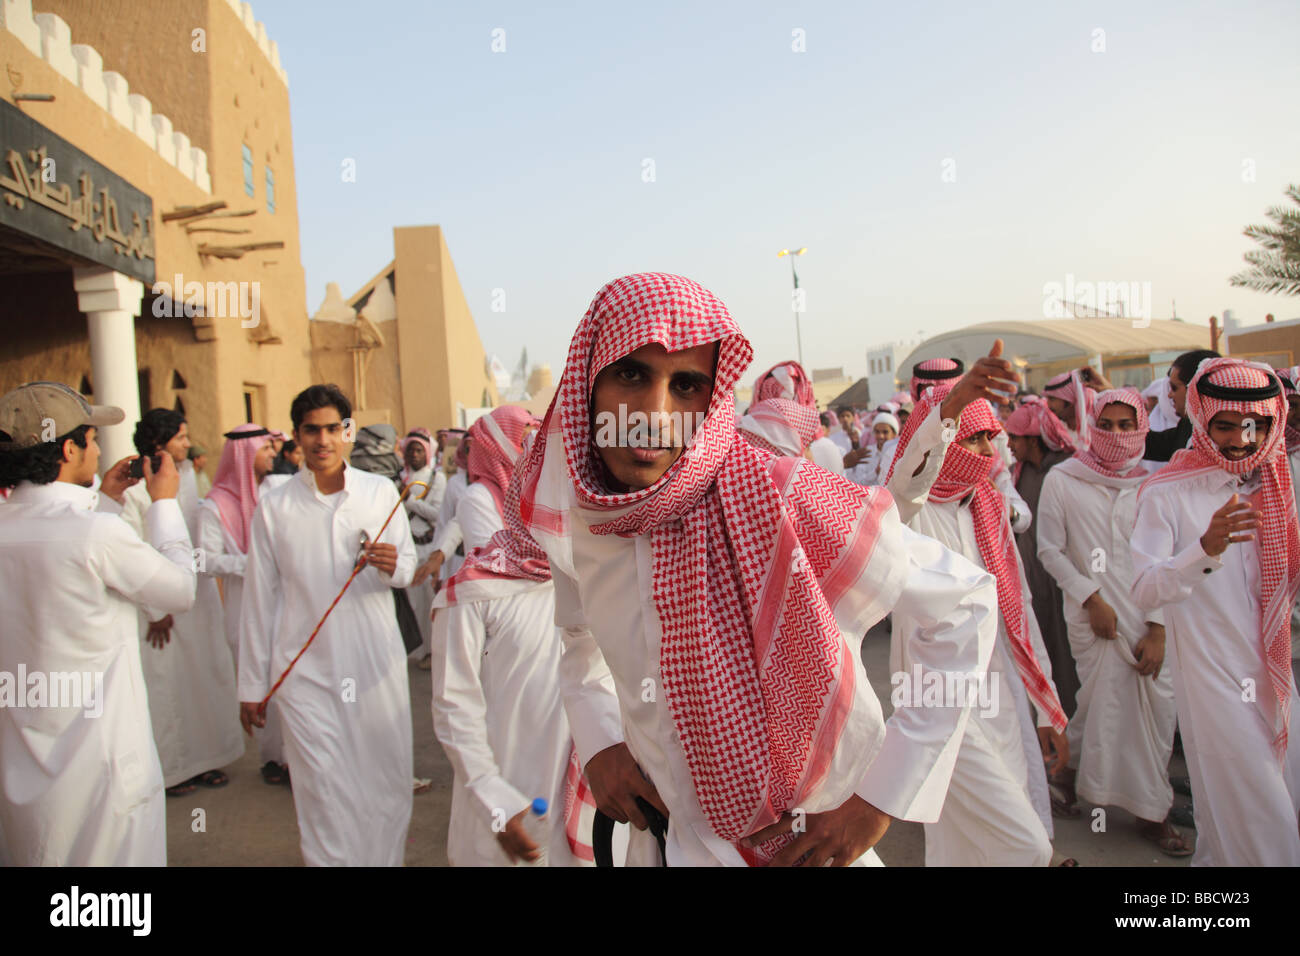 Vestir en arabia saudita fotografías e imágenes de alta resolución - Alamy